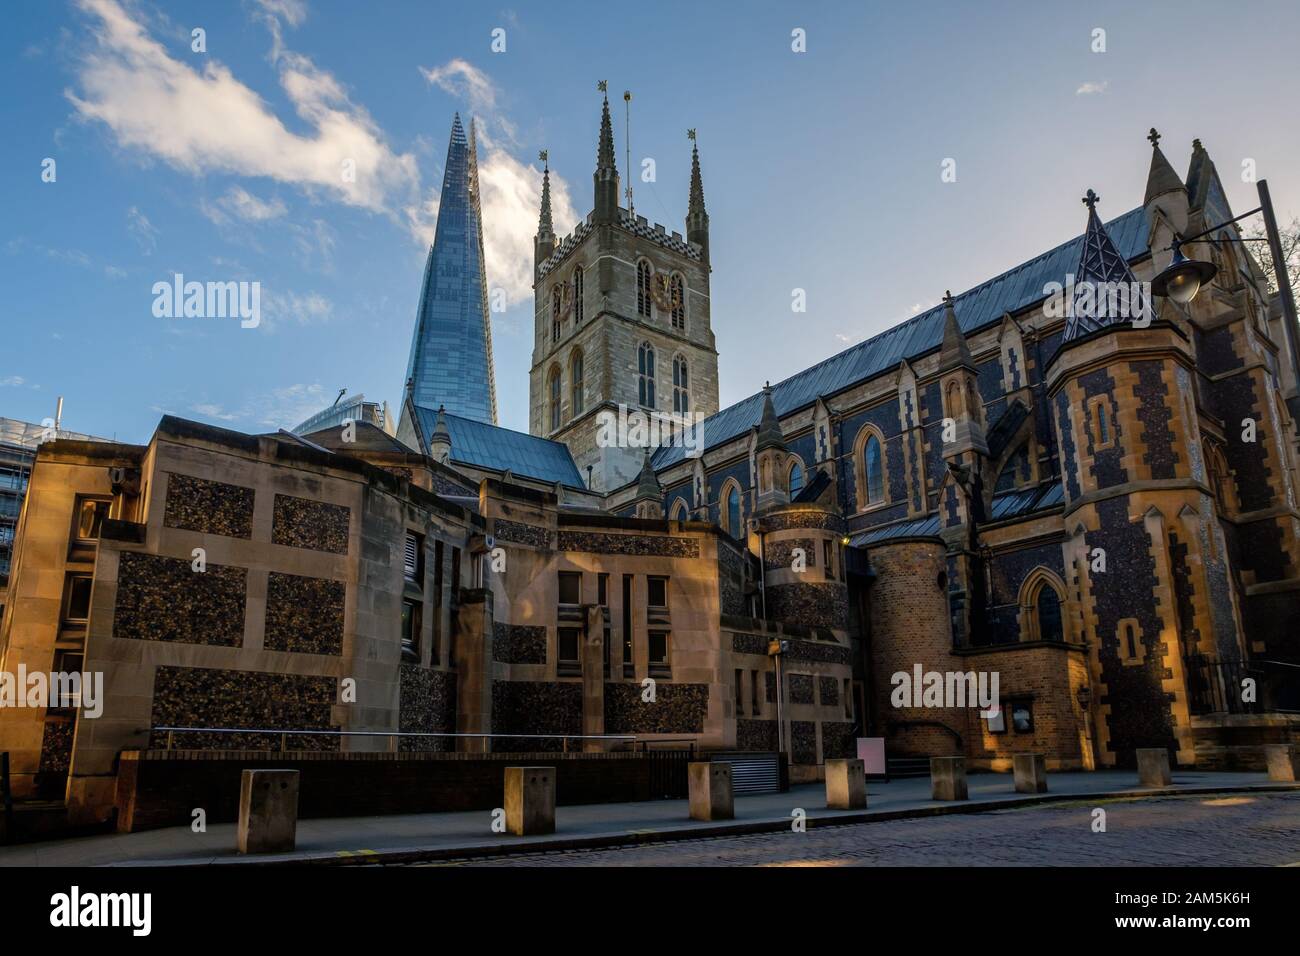 Southwark Cathedral & The Shard, London, UK Stock Photo